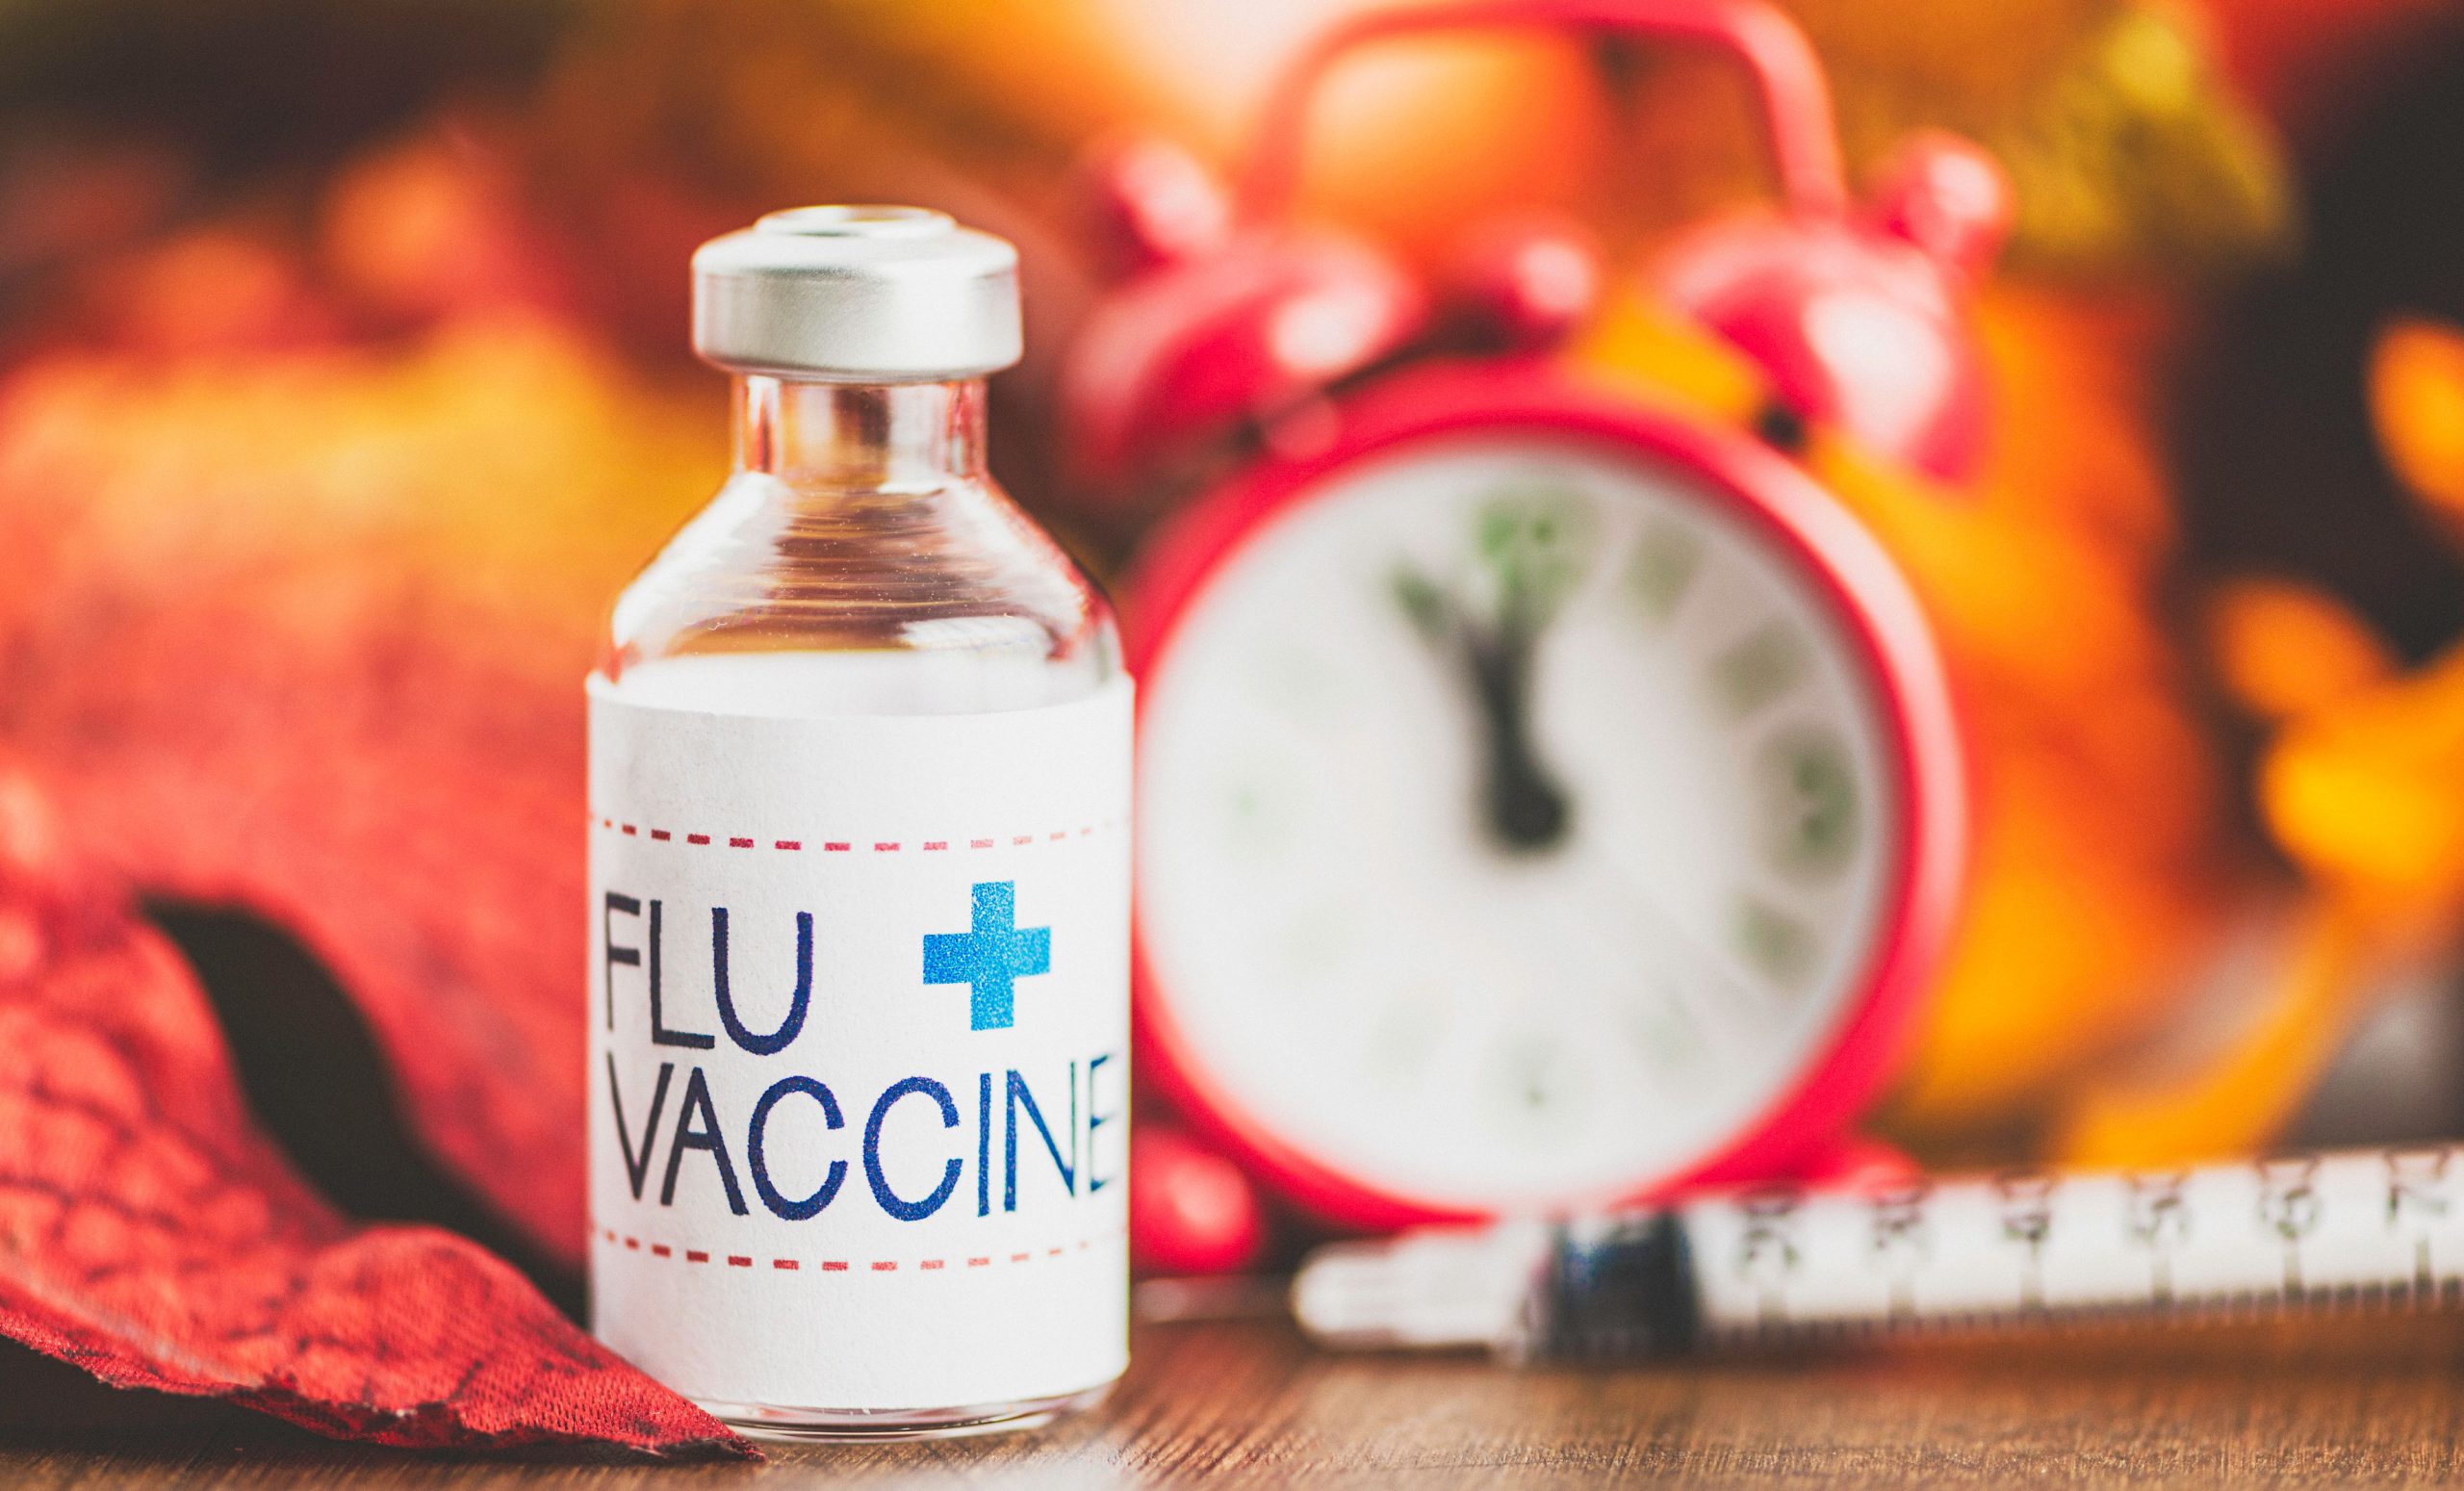 Vial of flu vaccine